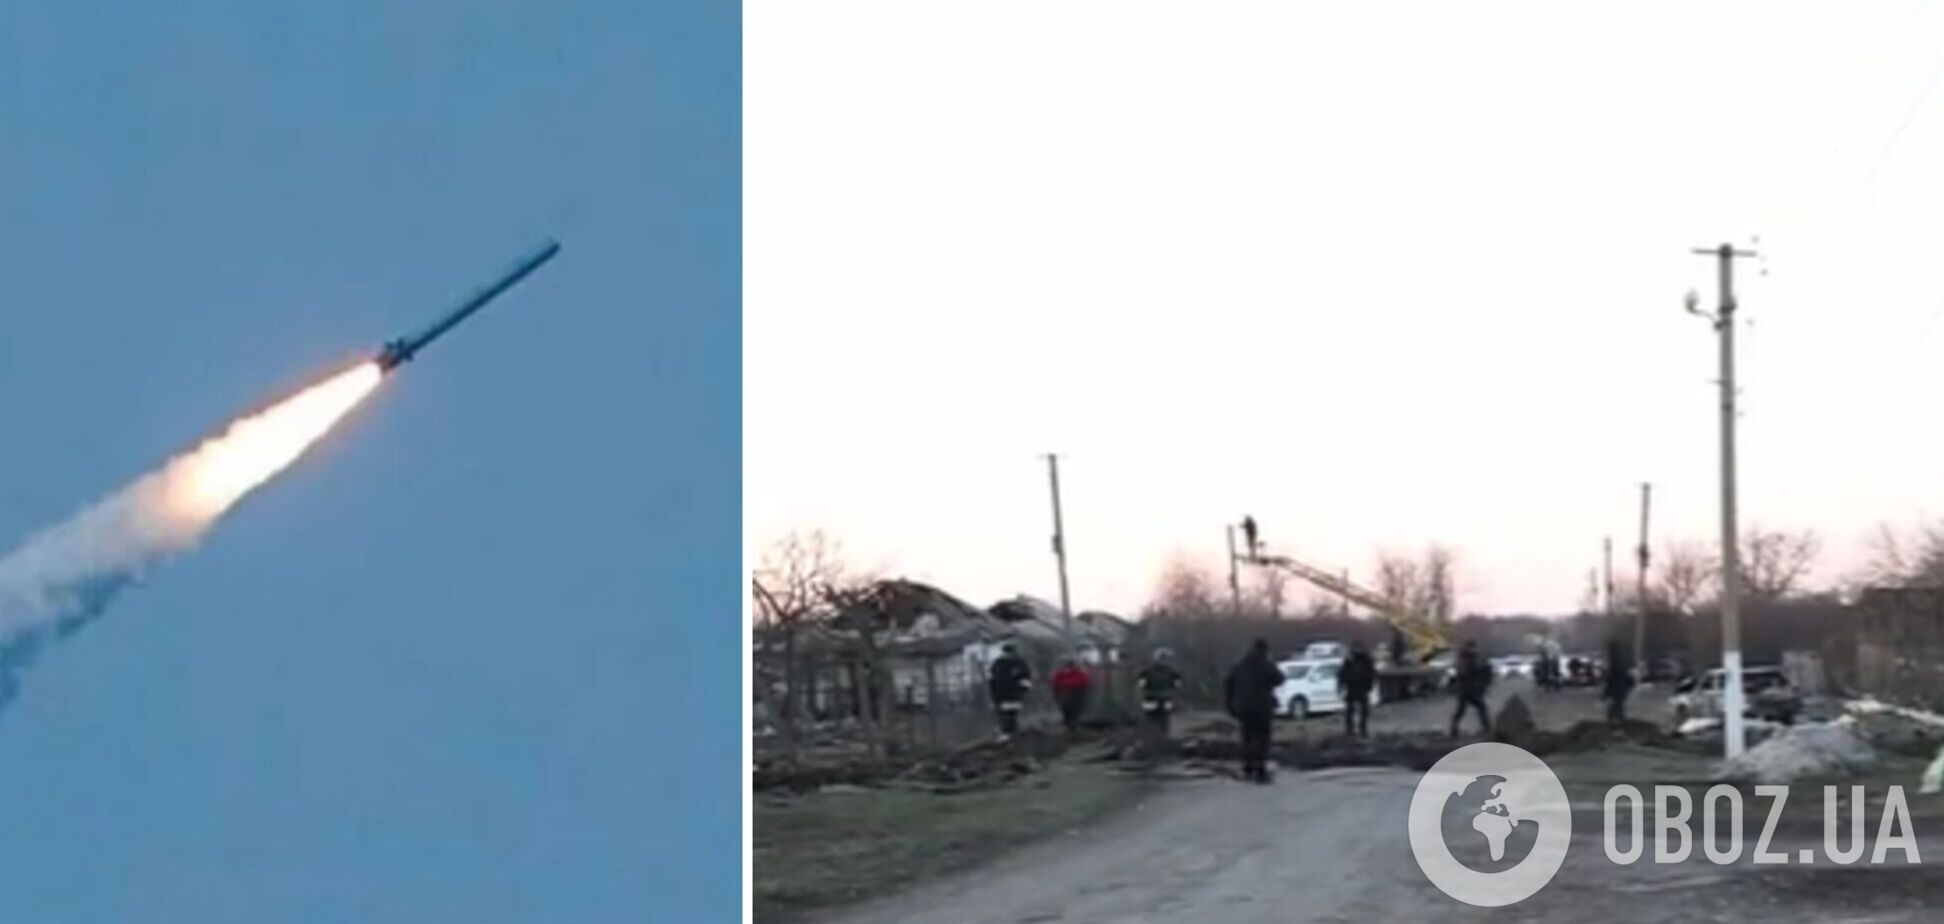 На месте прилета – огромная воронка: появилось видео из Новософиевки на Запорожье, где российская ракета убила двух человек